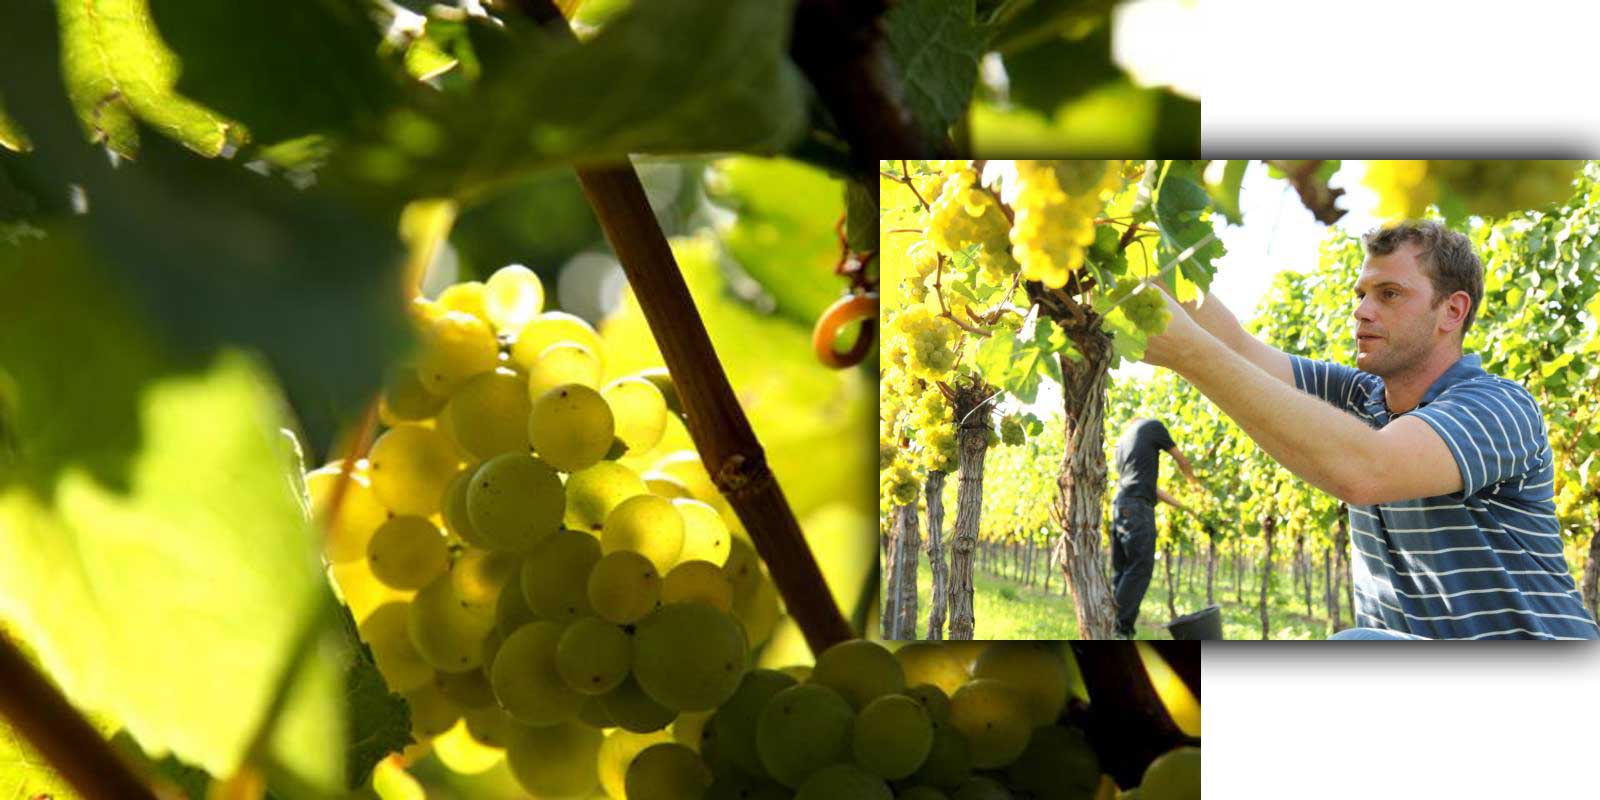 Vinarija Aloisiushof - Pfalz / vinorodna regija Alois Kiefer Obitelj Kiefer uzgaja vino u Palatinatu od 17. stoljeca. Alois Kiefer je 1950. godine osnovao vinariju Aloisiushof koju danas vode njegova tri sina. Ekoloski prihvatljivi vinogradi, pazljiv rad u podrumu vodeci racuna o karakteristikama terroira vina i stalna kontrola kvalitete jamstvo su visoke kvalitete Kieferovih vina.